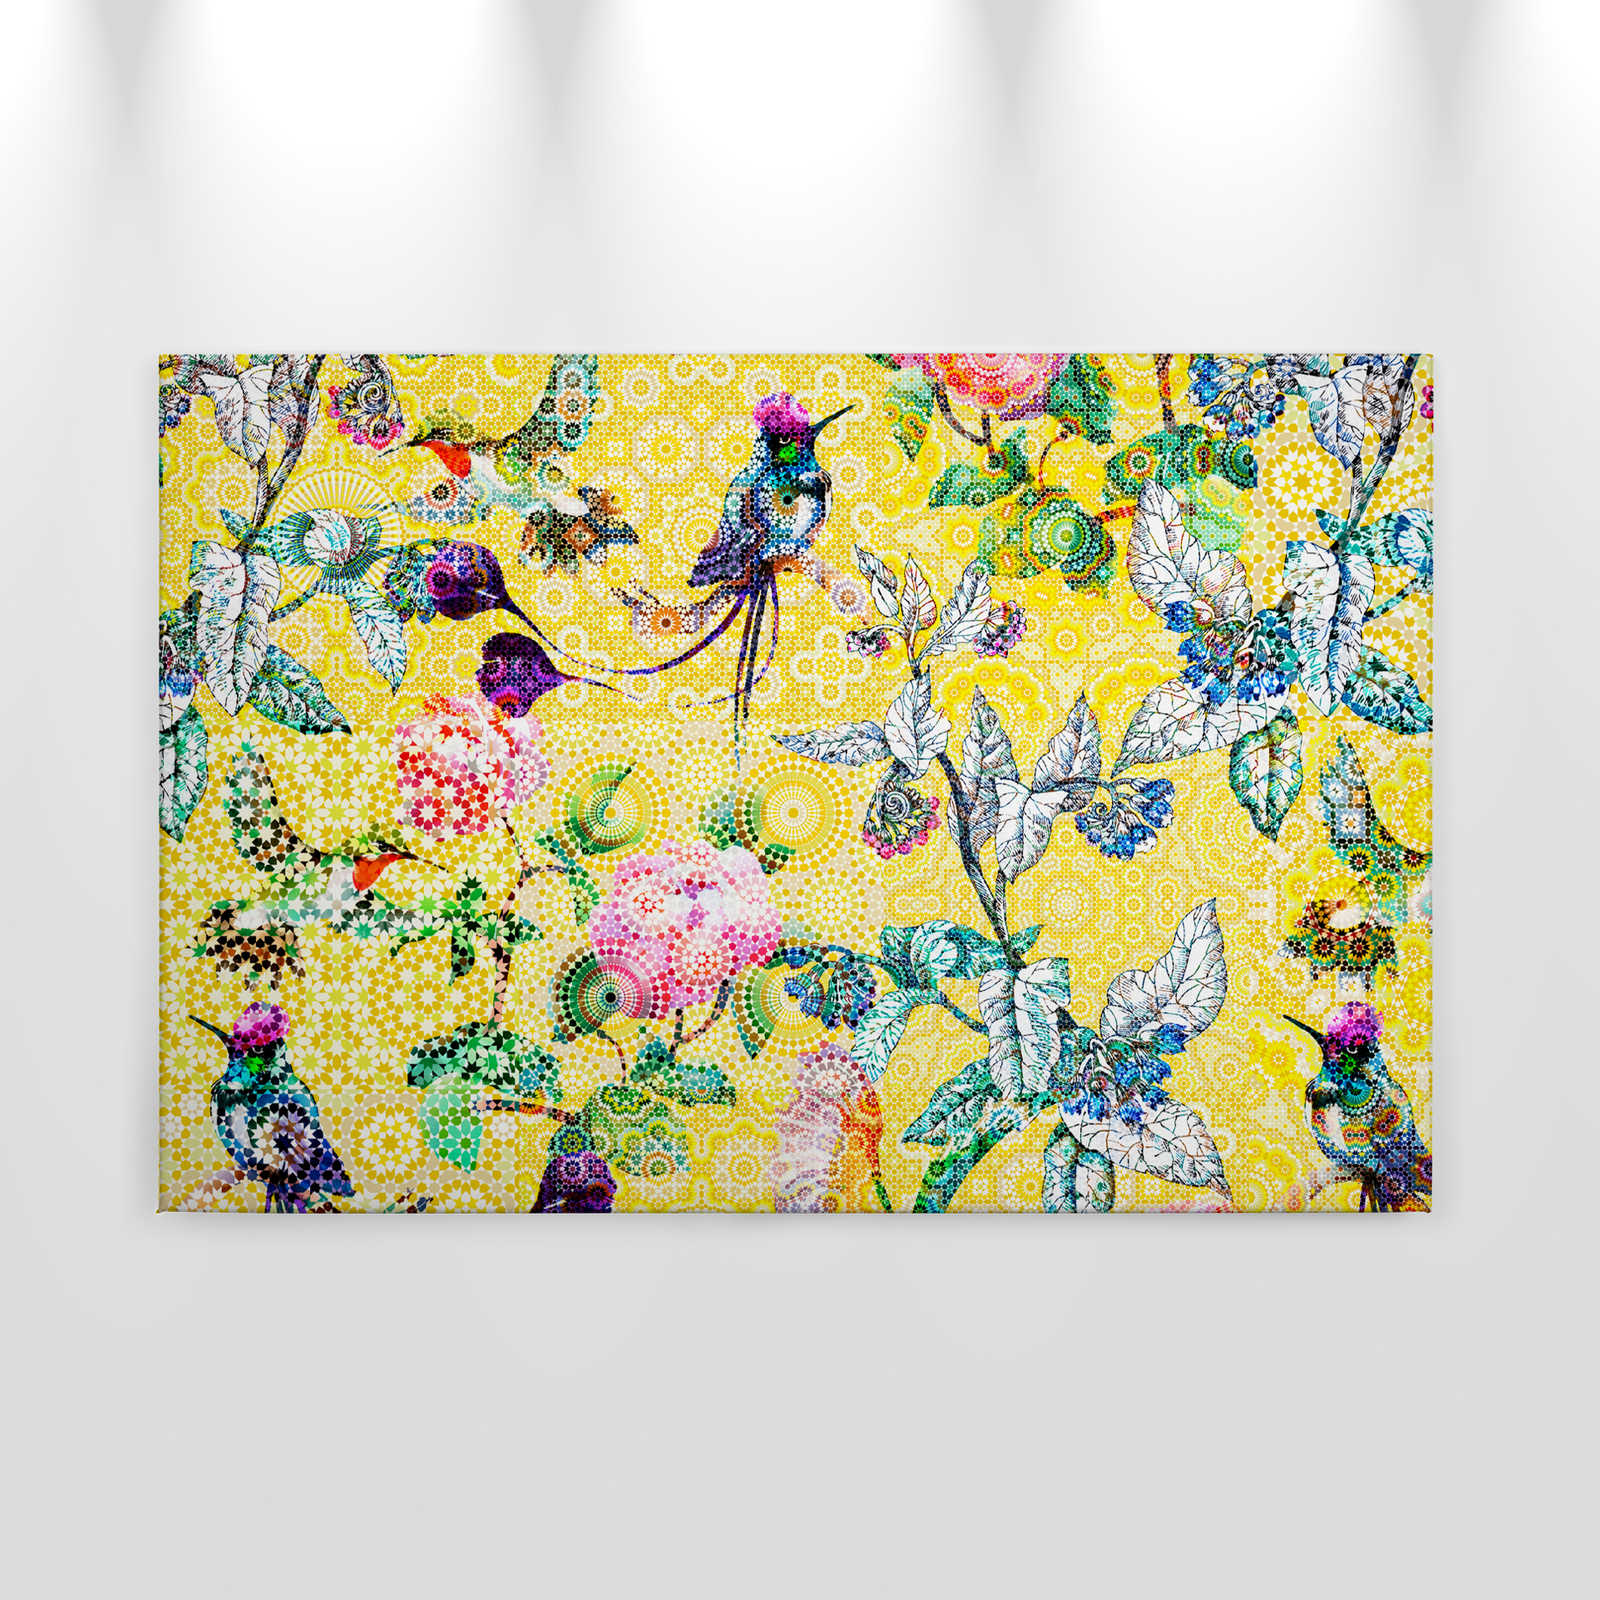             Toile Mosaïque de fleurs exotiques - 0,90 m x 0,60 m
        